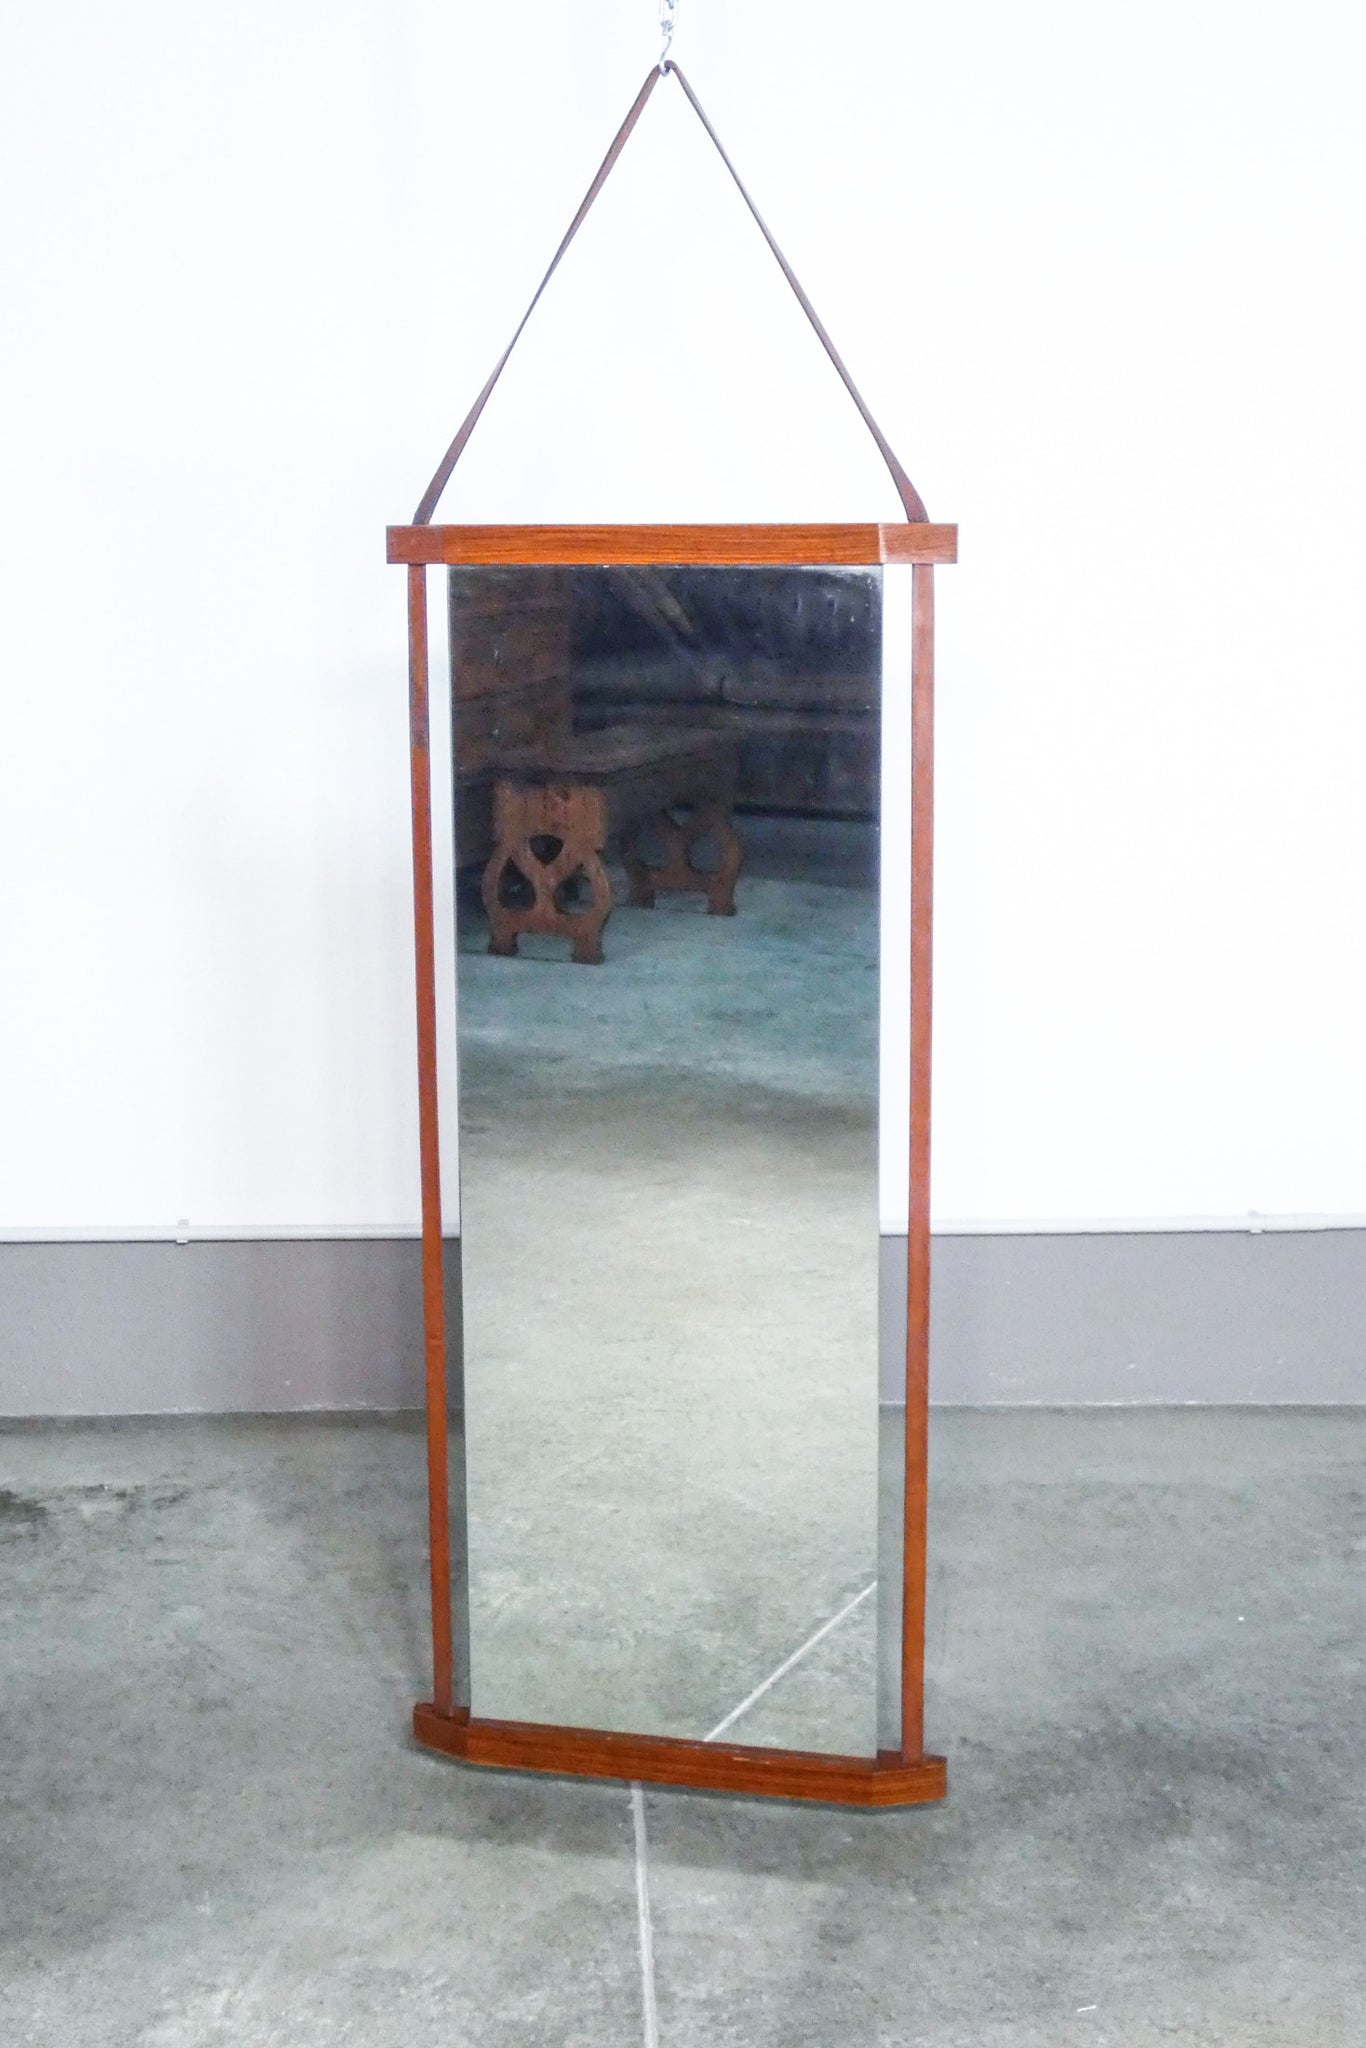 specchiera design scandinavo 1970s vintage specchio legno teak hanging mirror